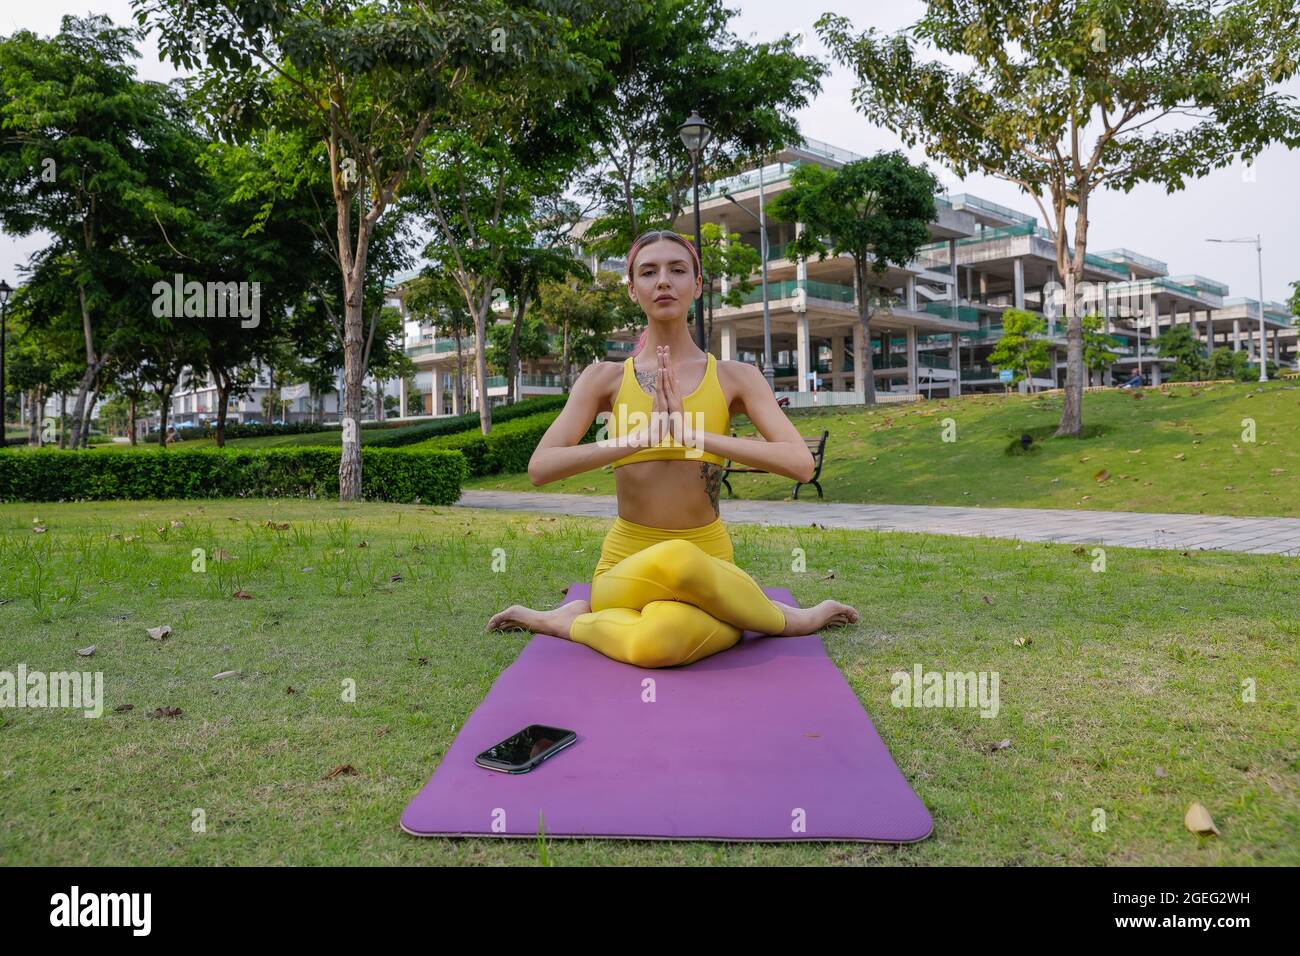 Exercice de yoga - femme faisant du yoga poser la méditation dans le sport de parc public, concept sain. Vêtements de sport jaunes Banque D'Images